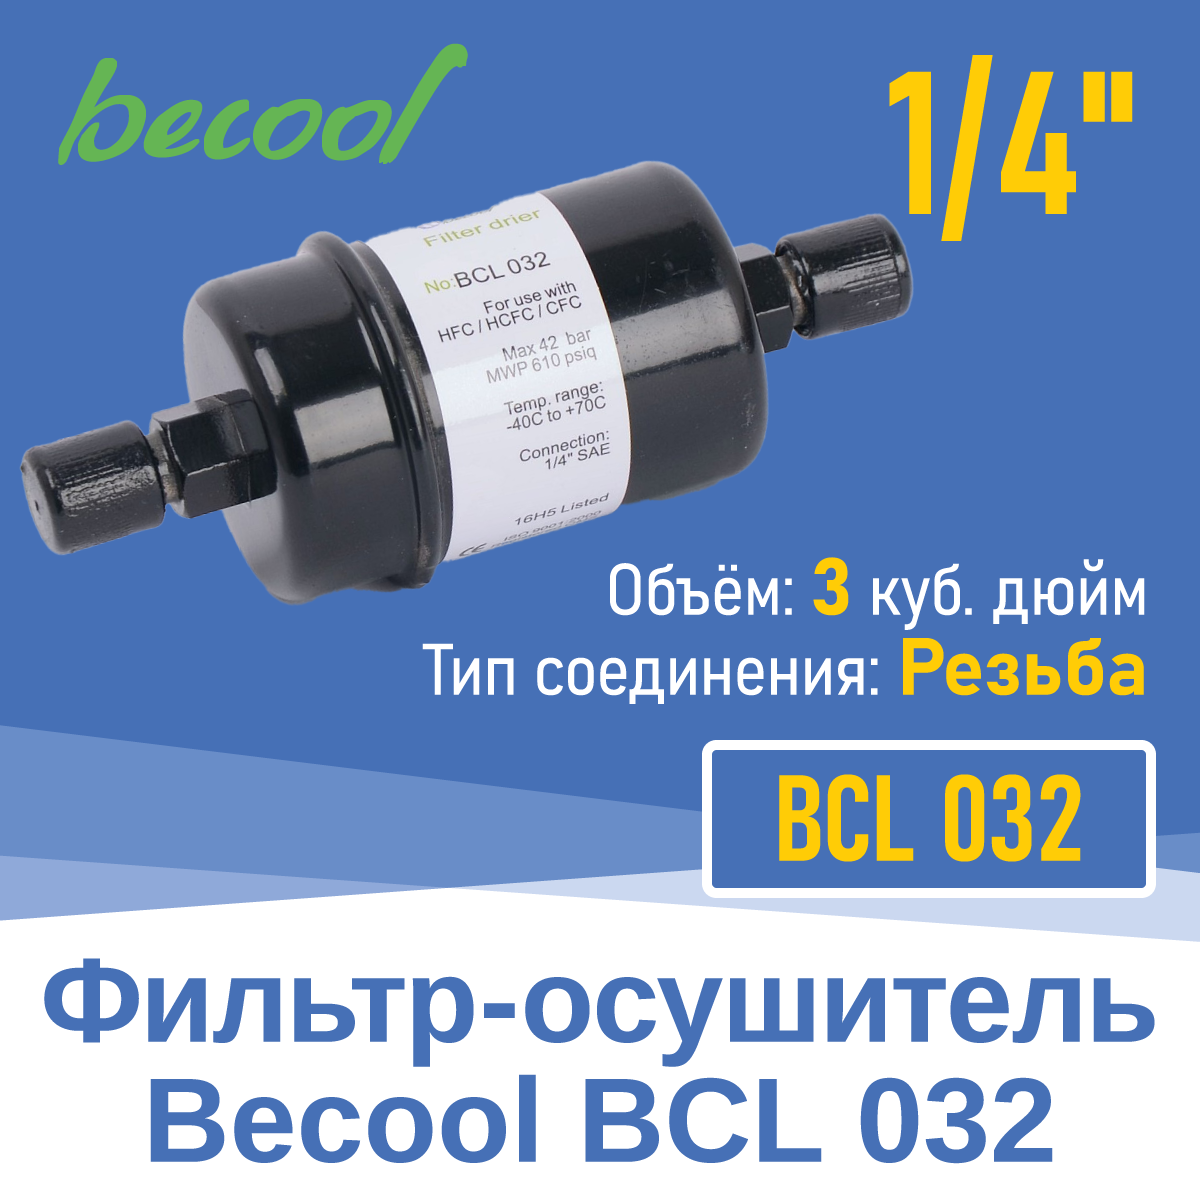 Фильтр-осушитель 1/4" BCL 032 с резьбой (013700)